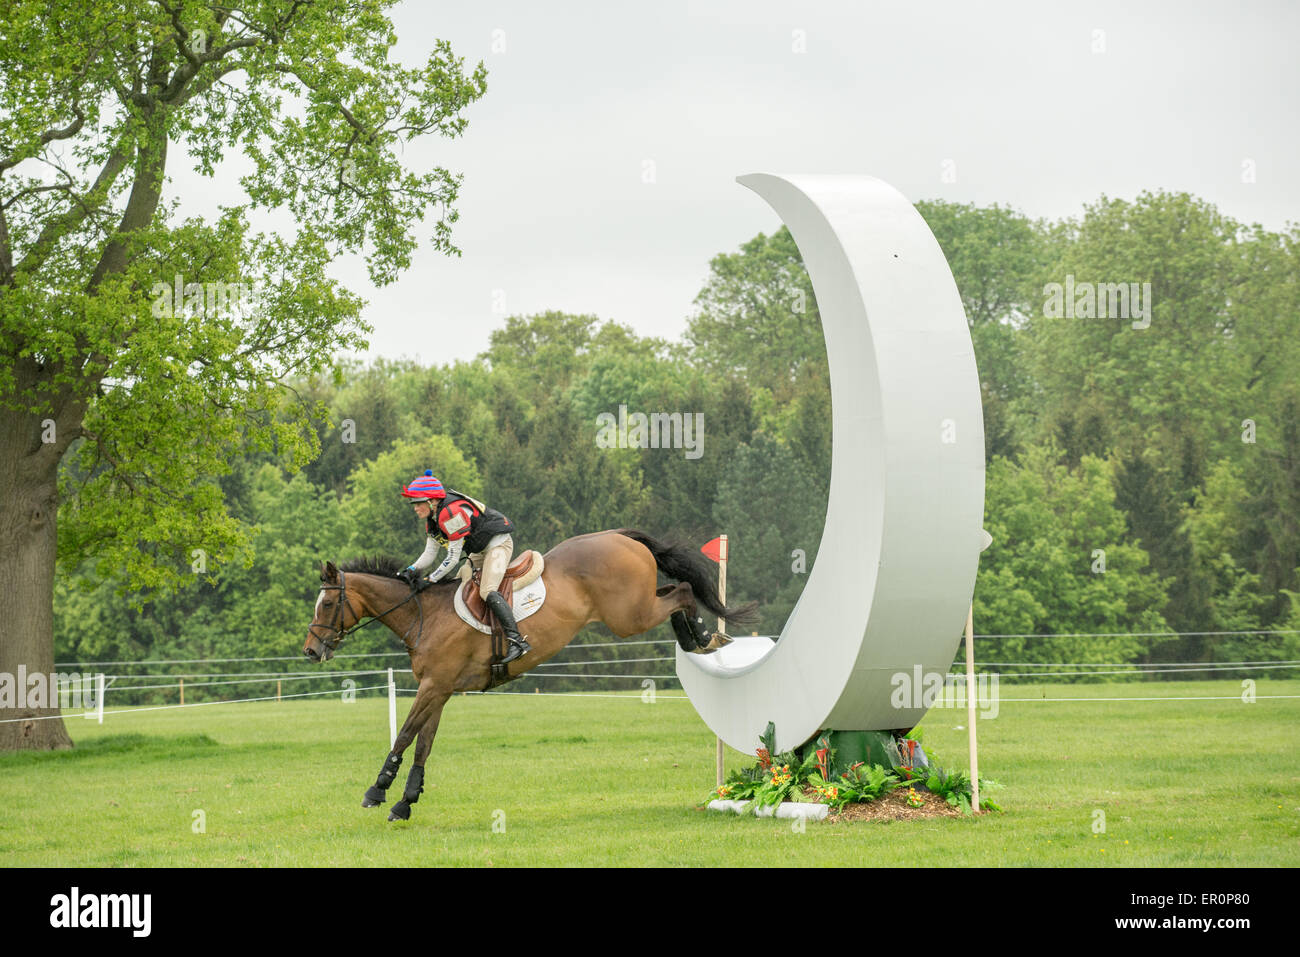 International Horse Trials, le château de Rockingham, Corby, Angleterre, 2015. Banque D'Images